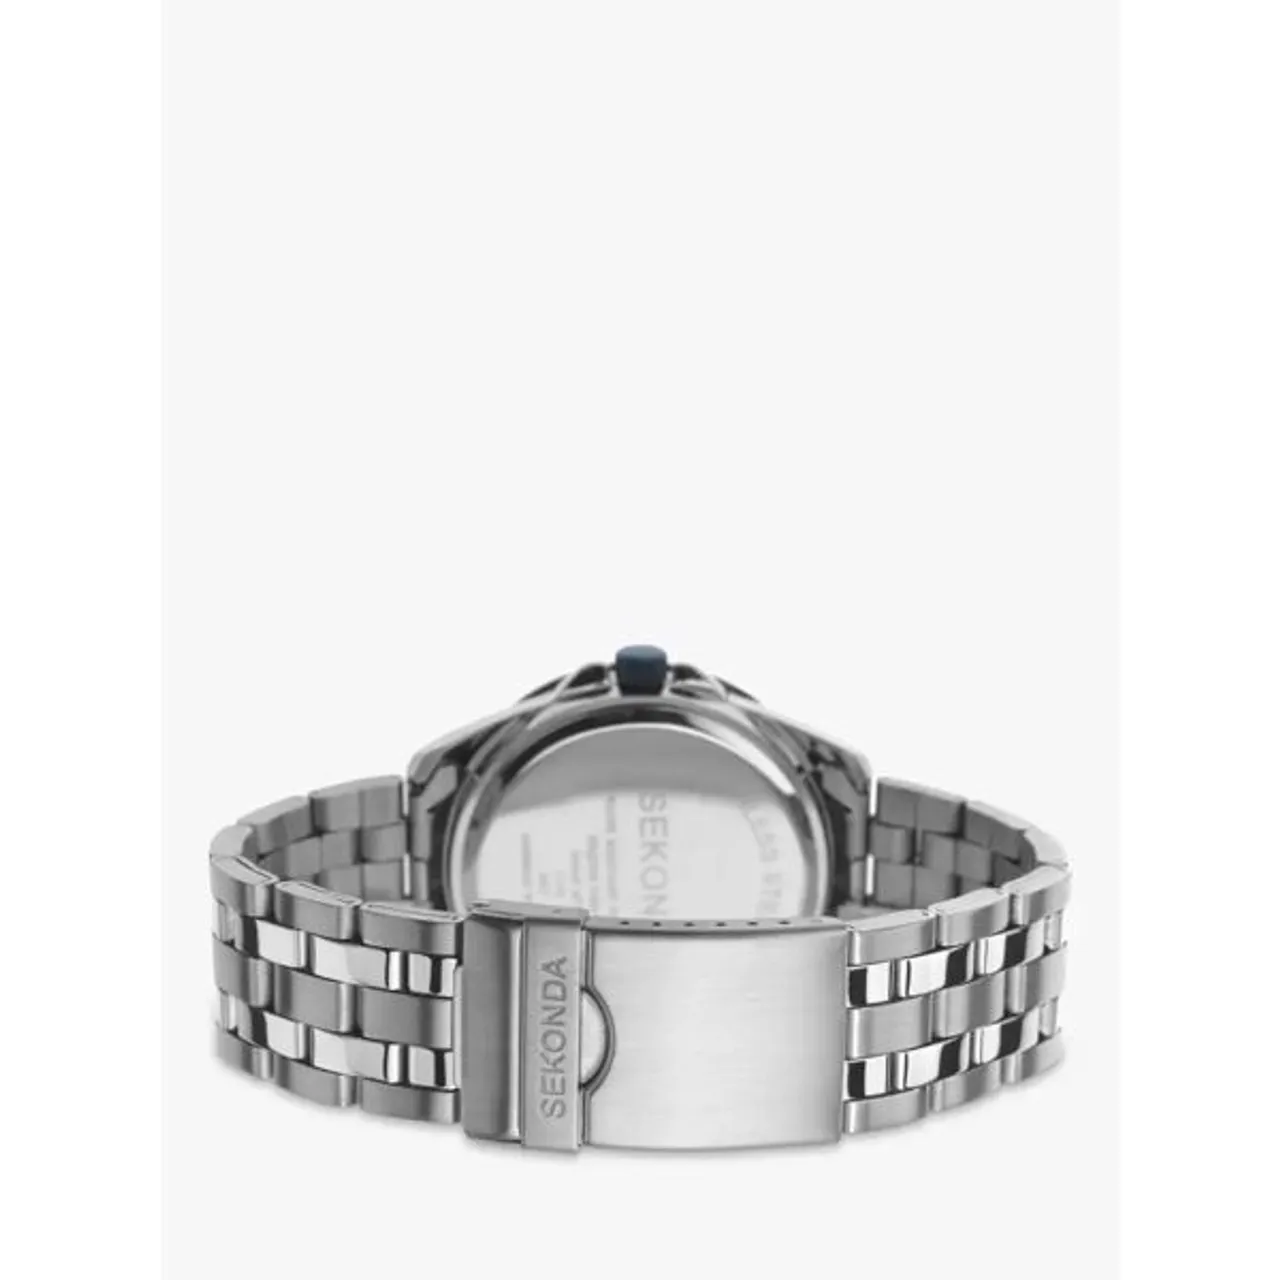 Sekonda 1391.27 Men's Chronograph Bracelet Strap Watch, Silver/Blue - Silver/Blue - Male